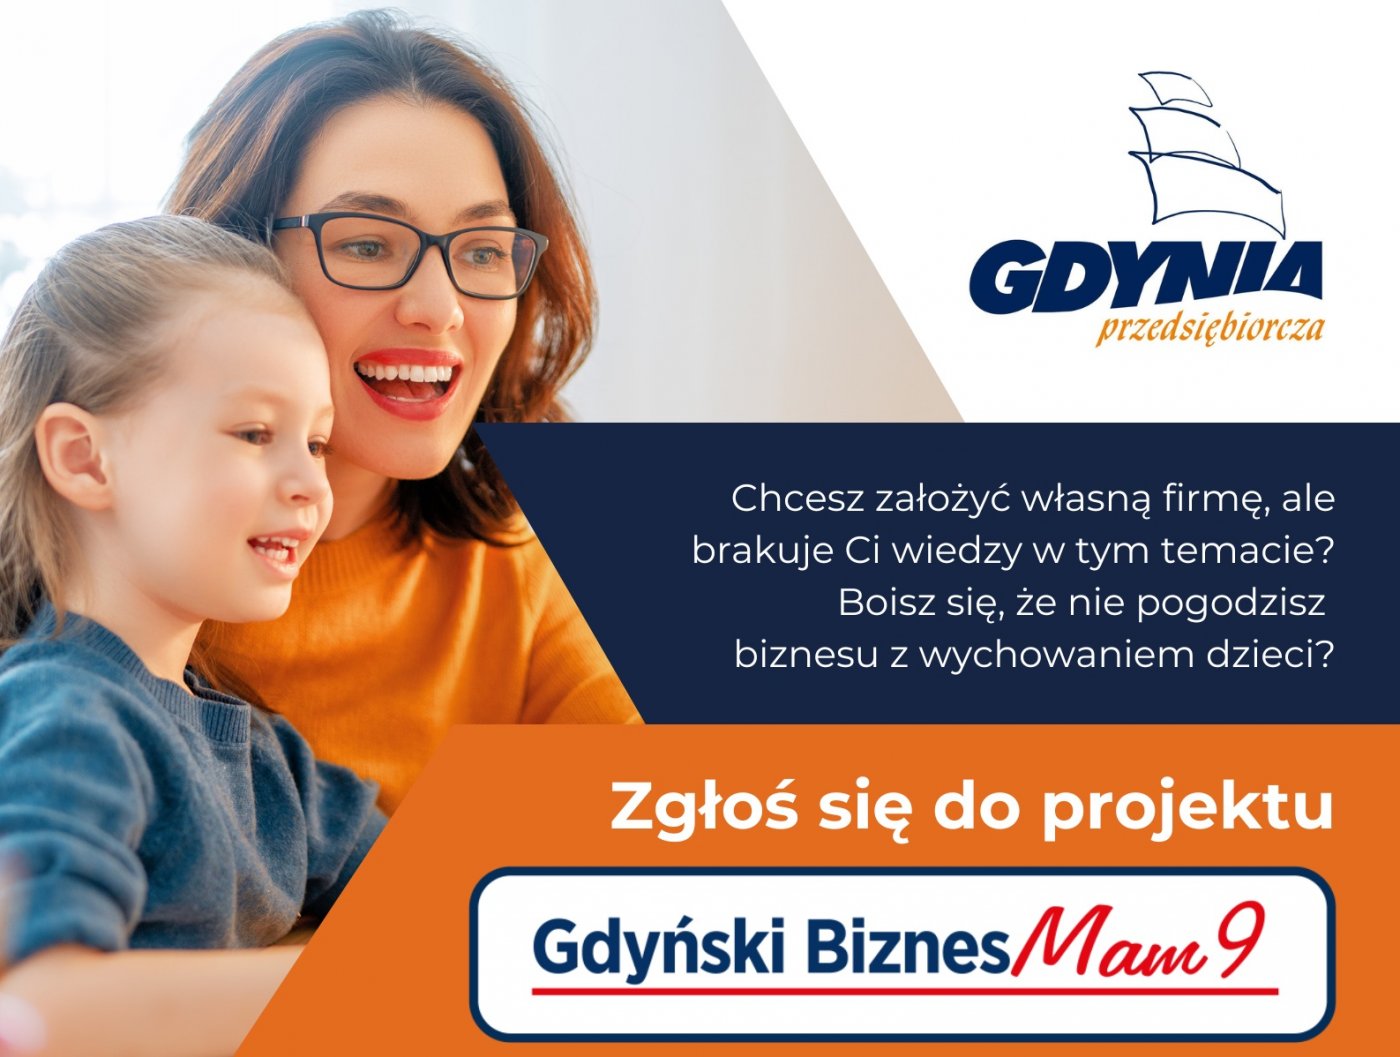 Kobieta z dzieckiem, pomarańczowe elementy, logotyp Gdyni, nazwa projektu Gdyński Biznesmam 9 i pisemne informacje